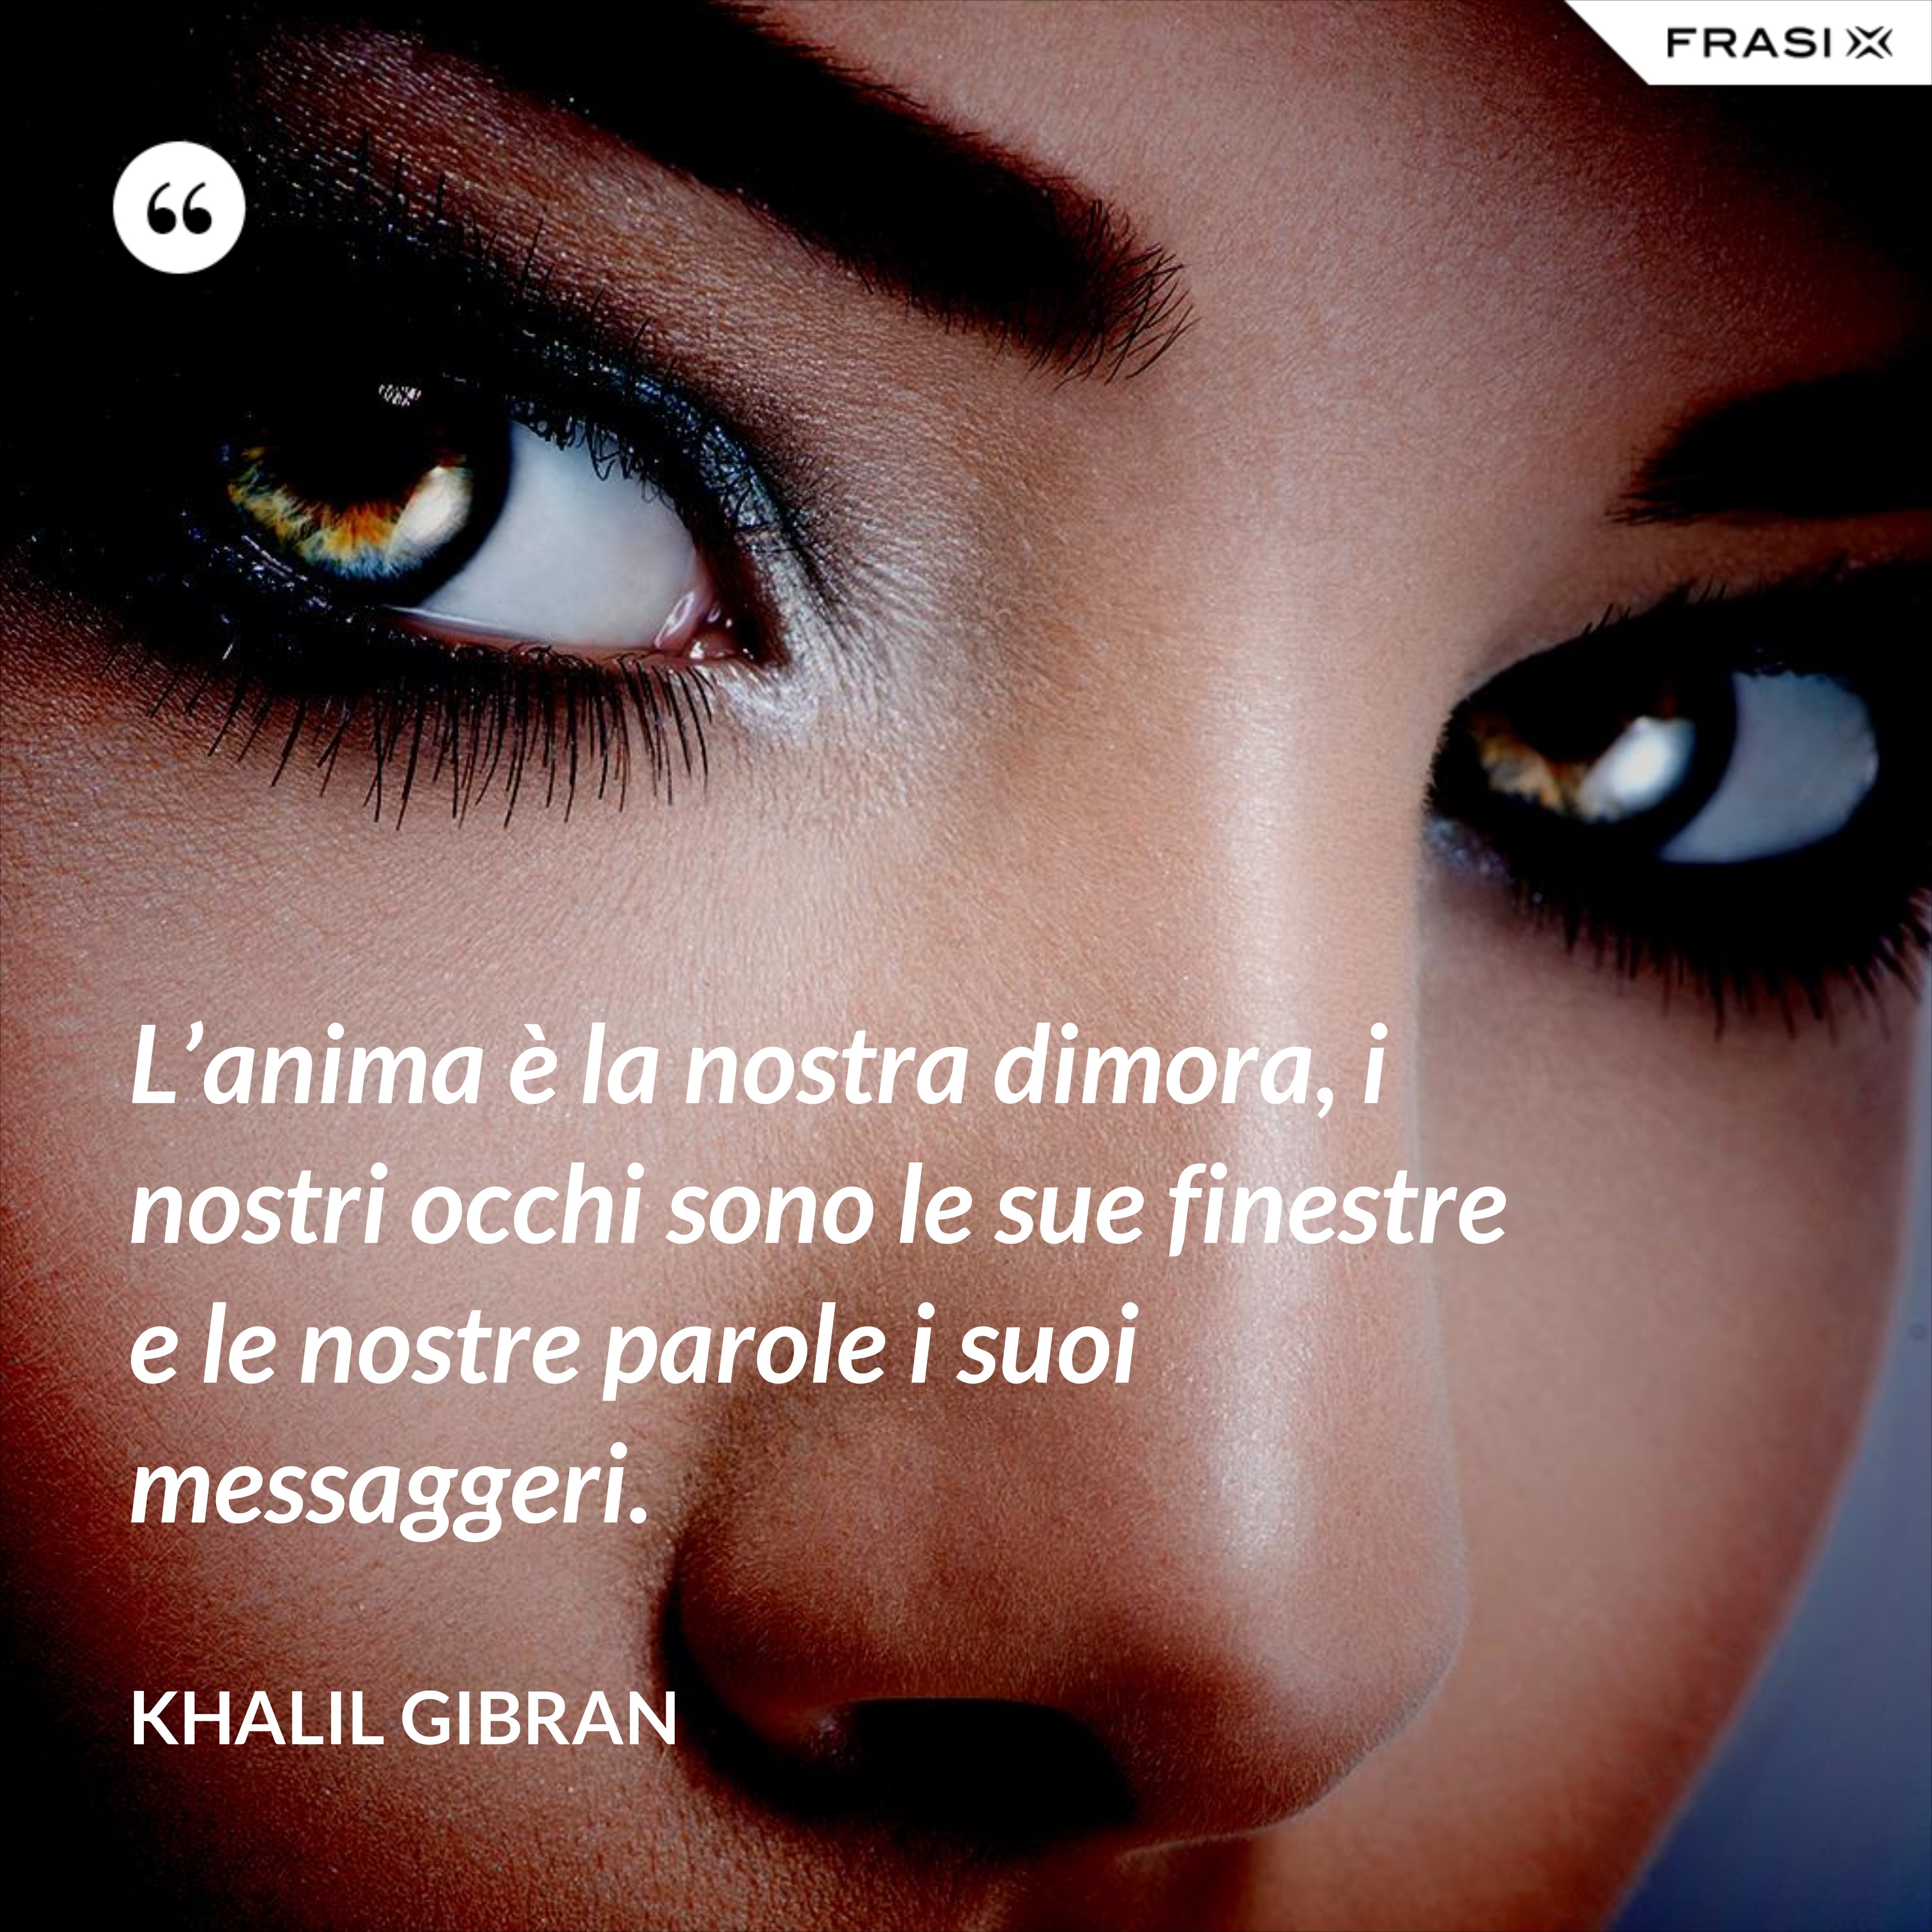 L’anima è la nostra dimora, i nostri occhi sono le sue finestre e le nostre parole i suoi messaggeri. - Khalil Gibran